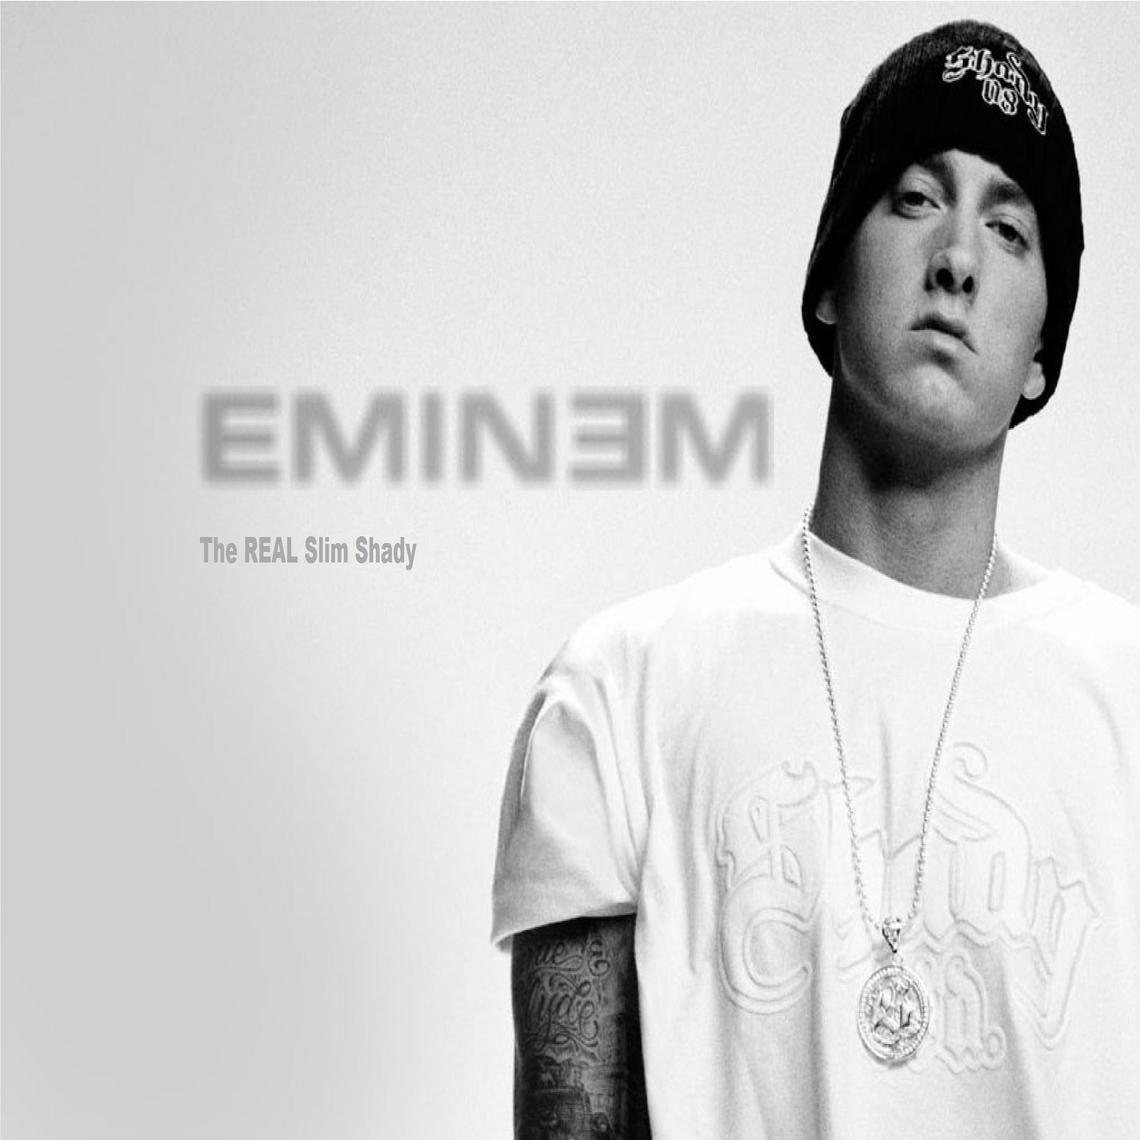 EMINEM the REAL Slim Shady. wallpaper, Eminem